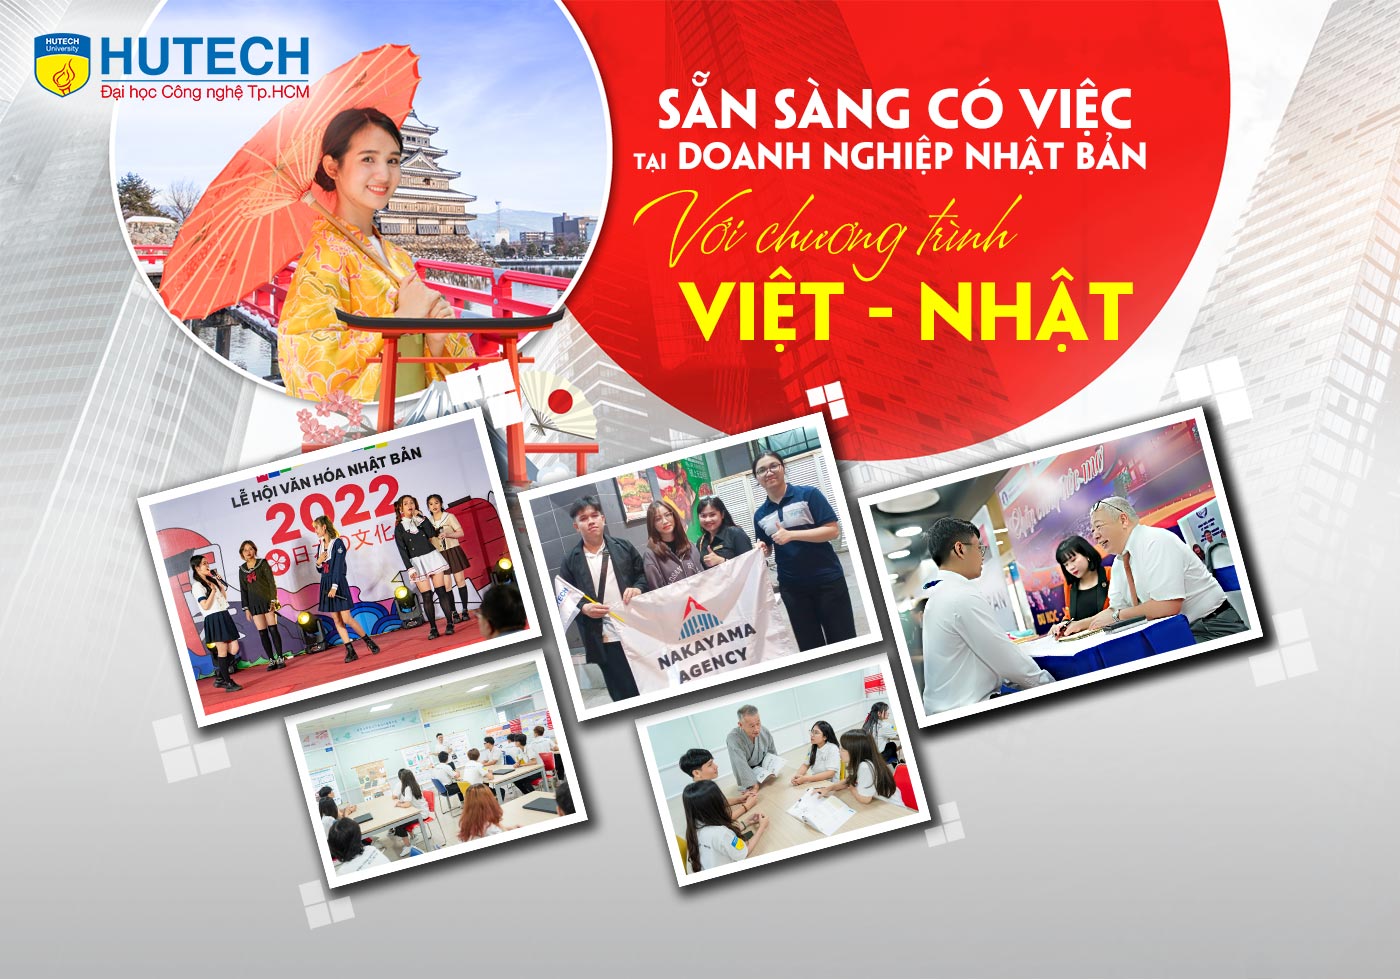 Sẵn sàng có việc tại doanh nghiệp Nhật Bản với chương trình Việt - Nhật HUTECH - ảnh 1